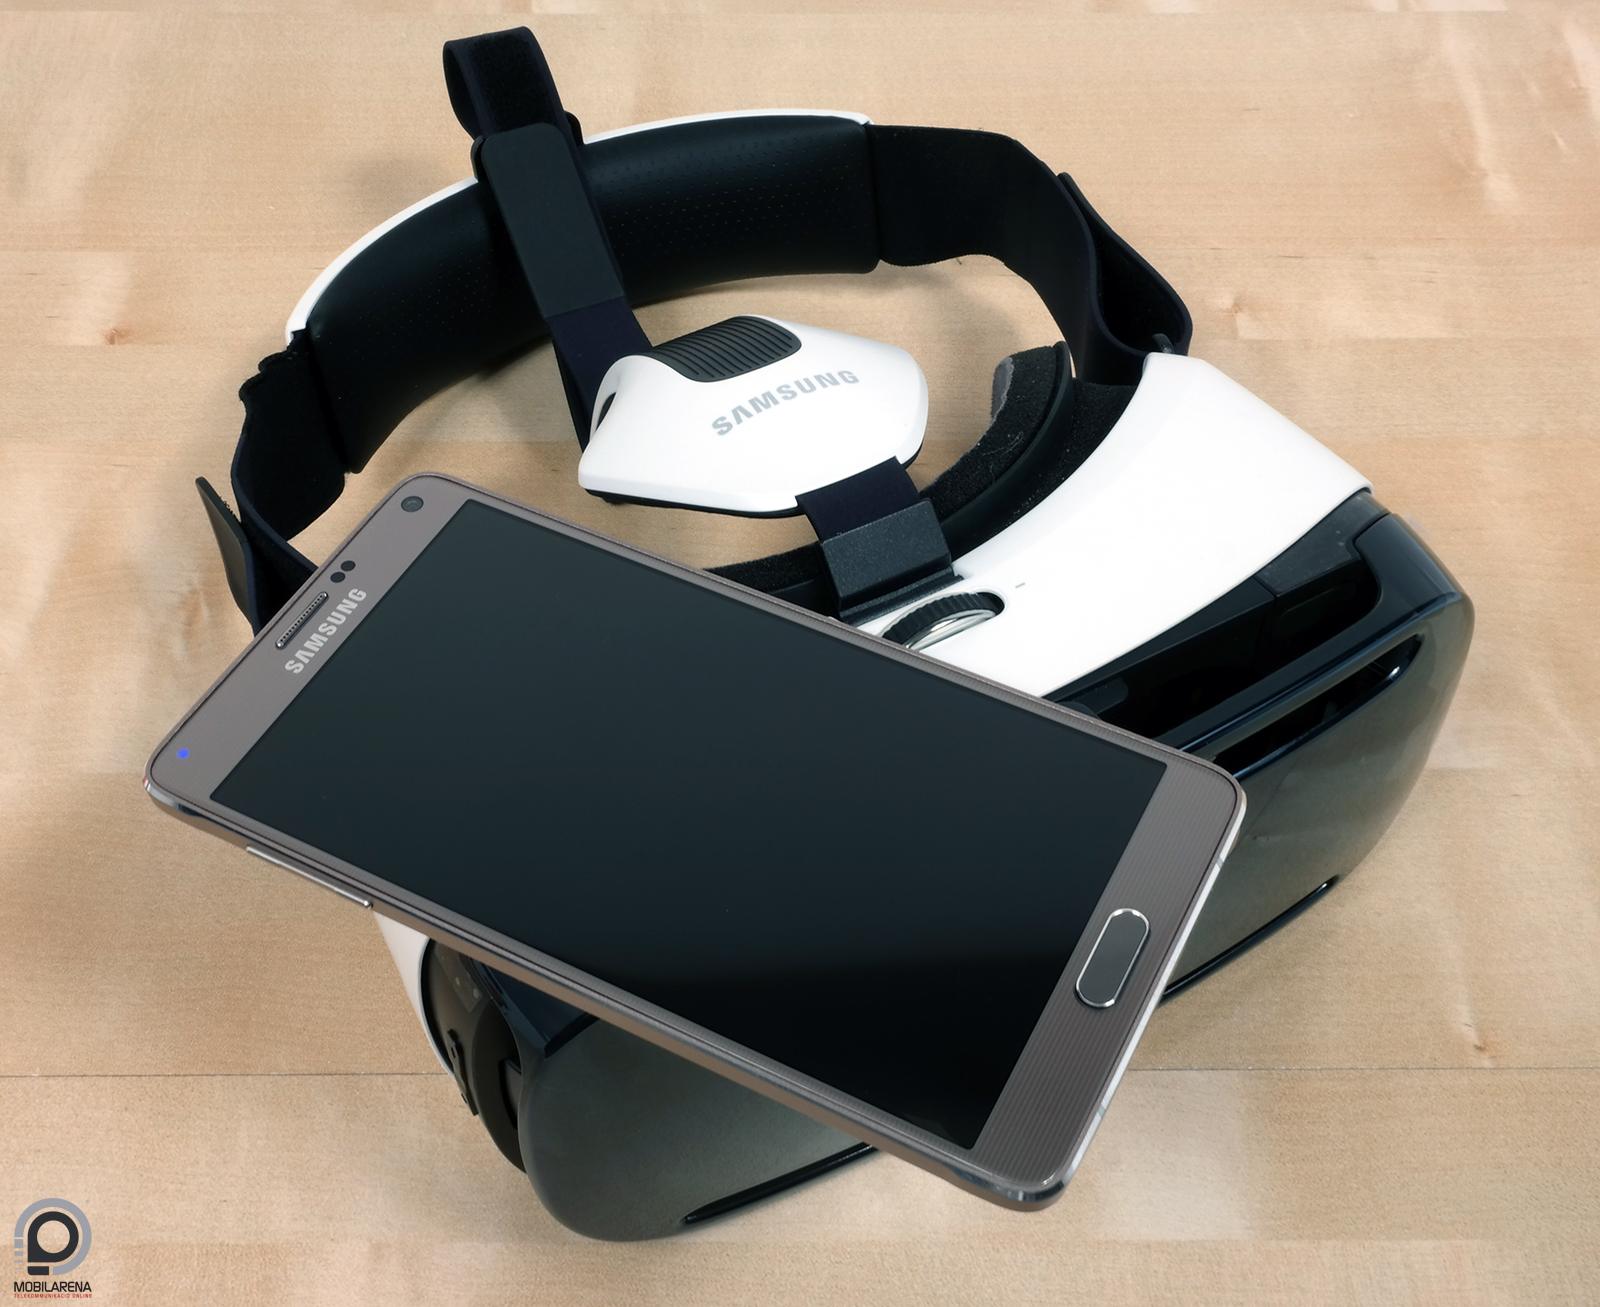 Samsung Gear VR - szemünk előtt a jövő - Mobilarena Okostelefon / Egyéb  teszt